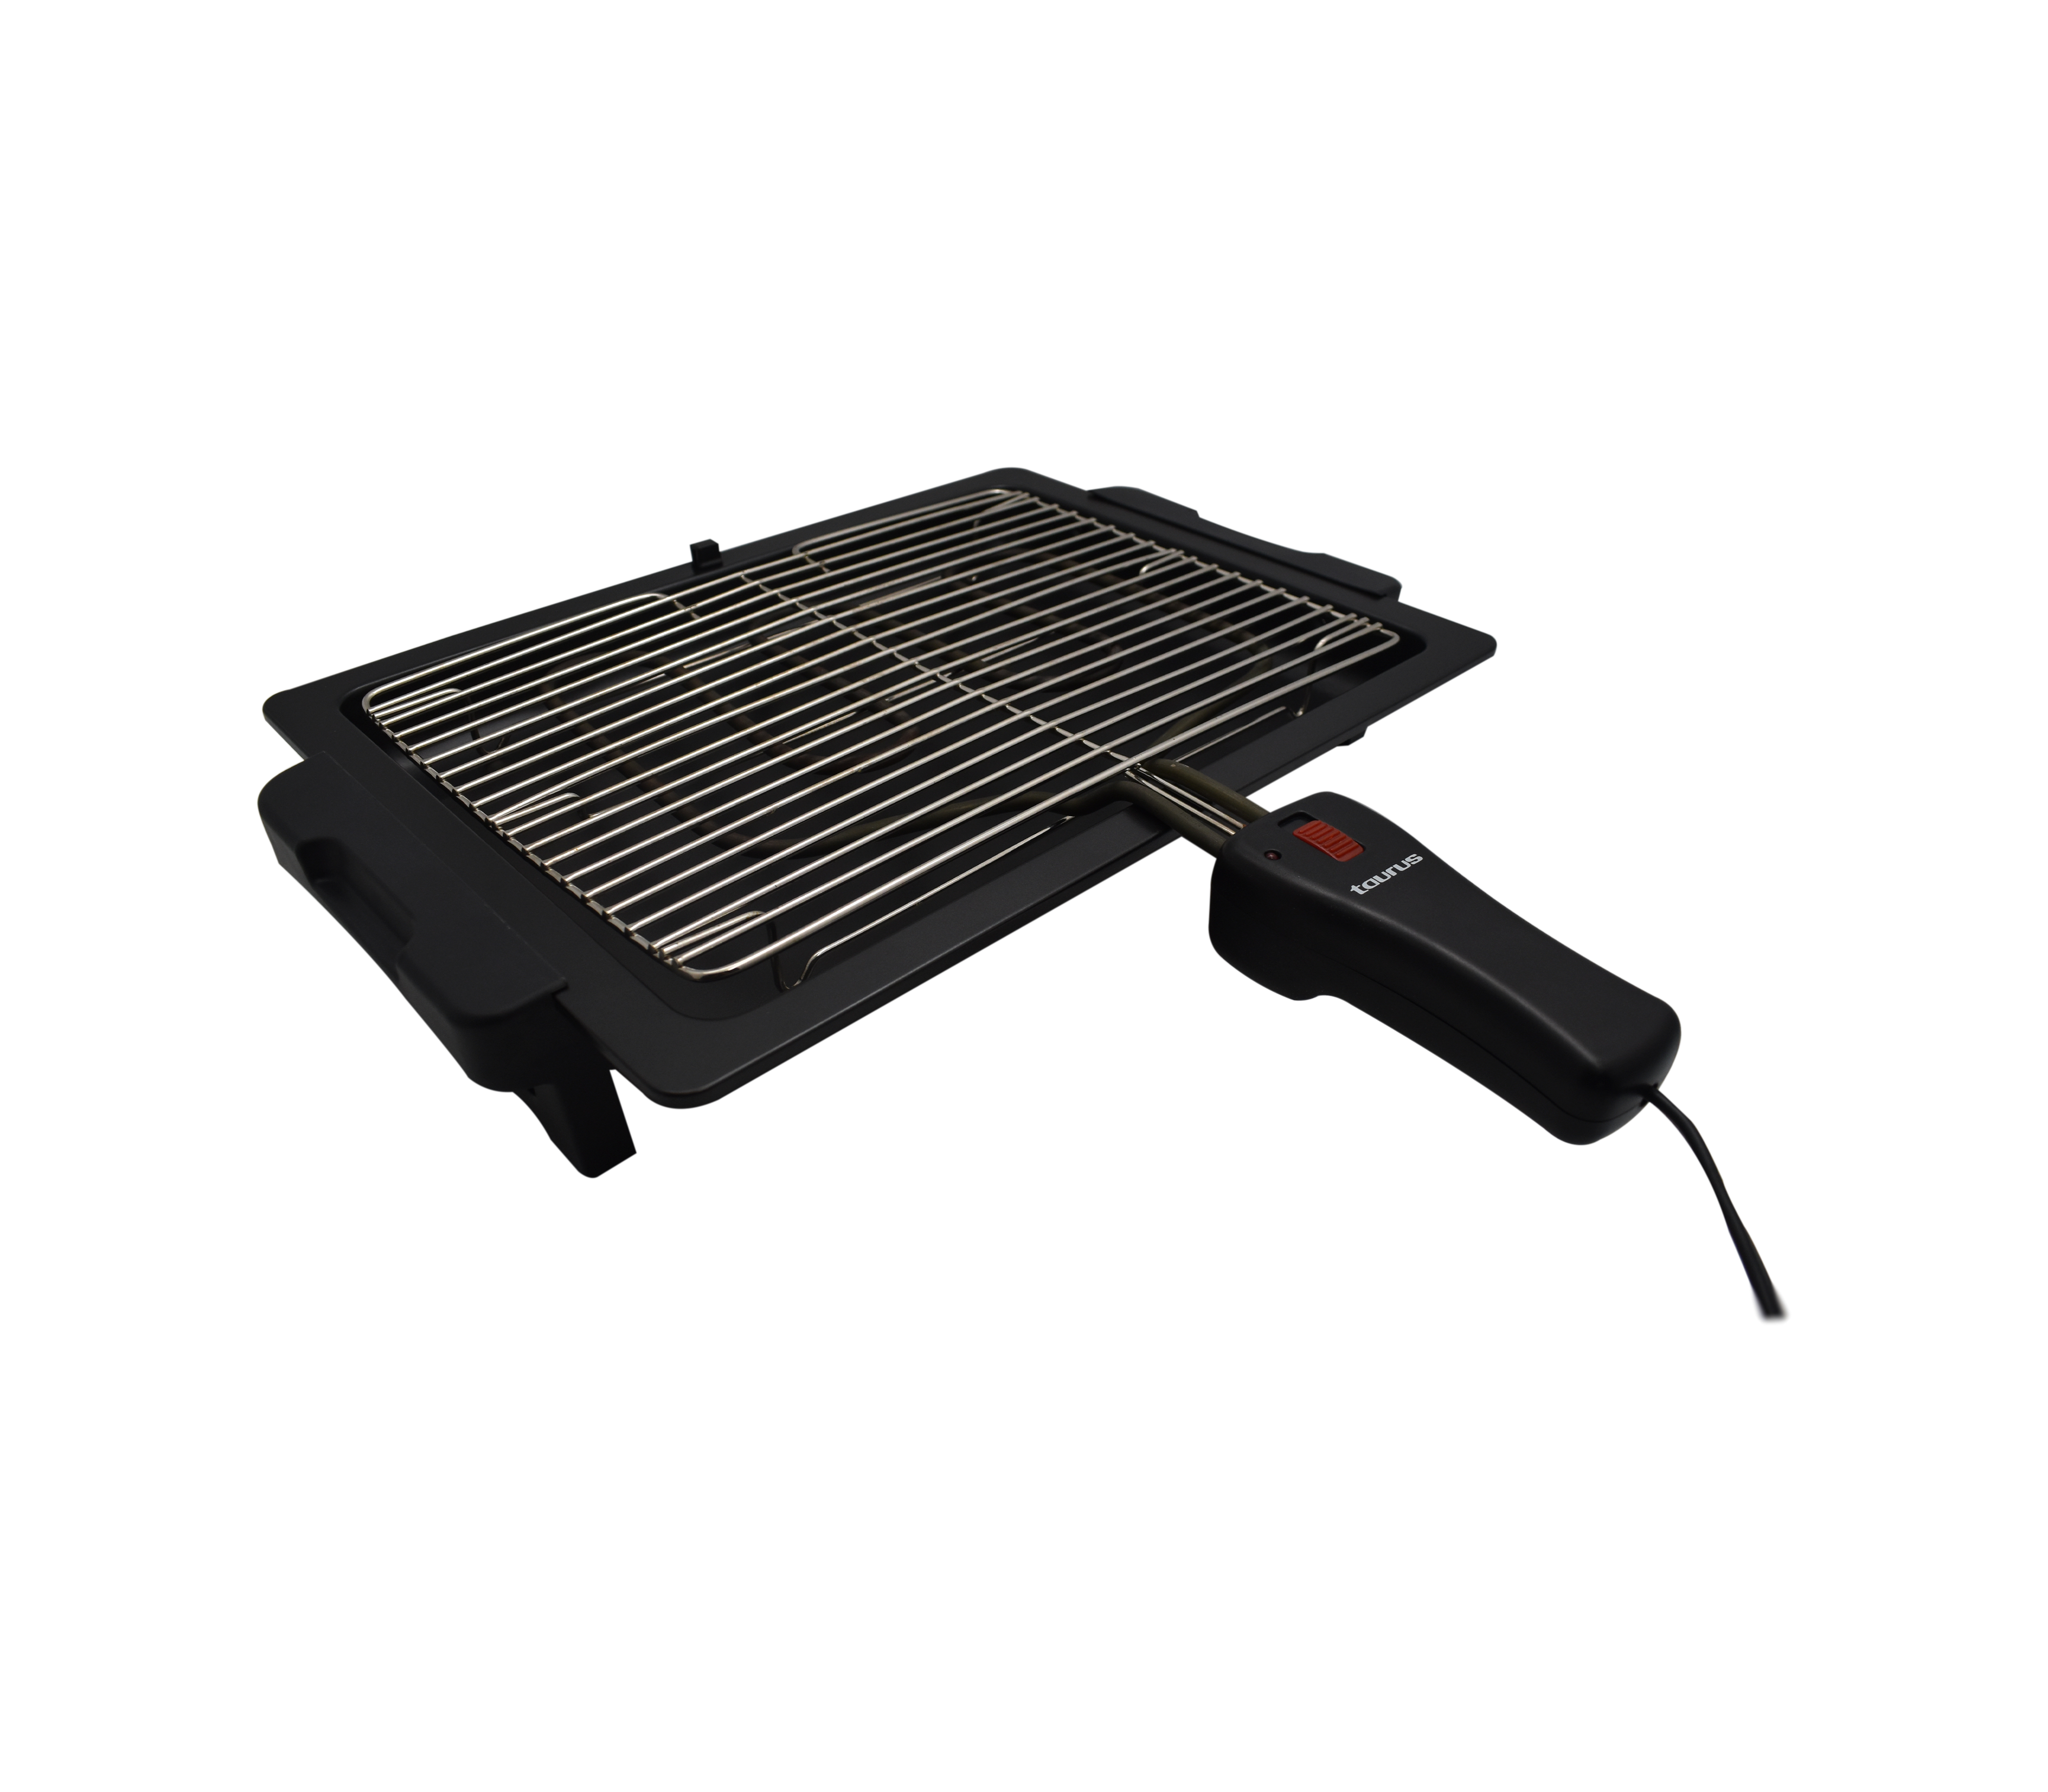 Plancha eléctrica asadora con grill y raclette, Arizona de Taurus